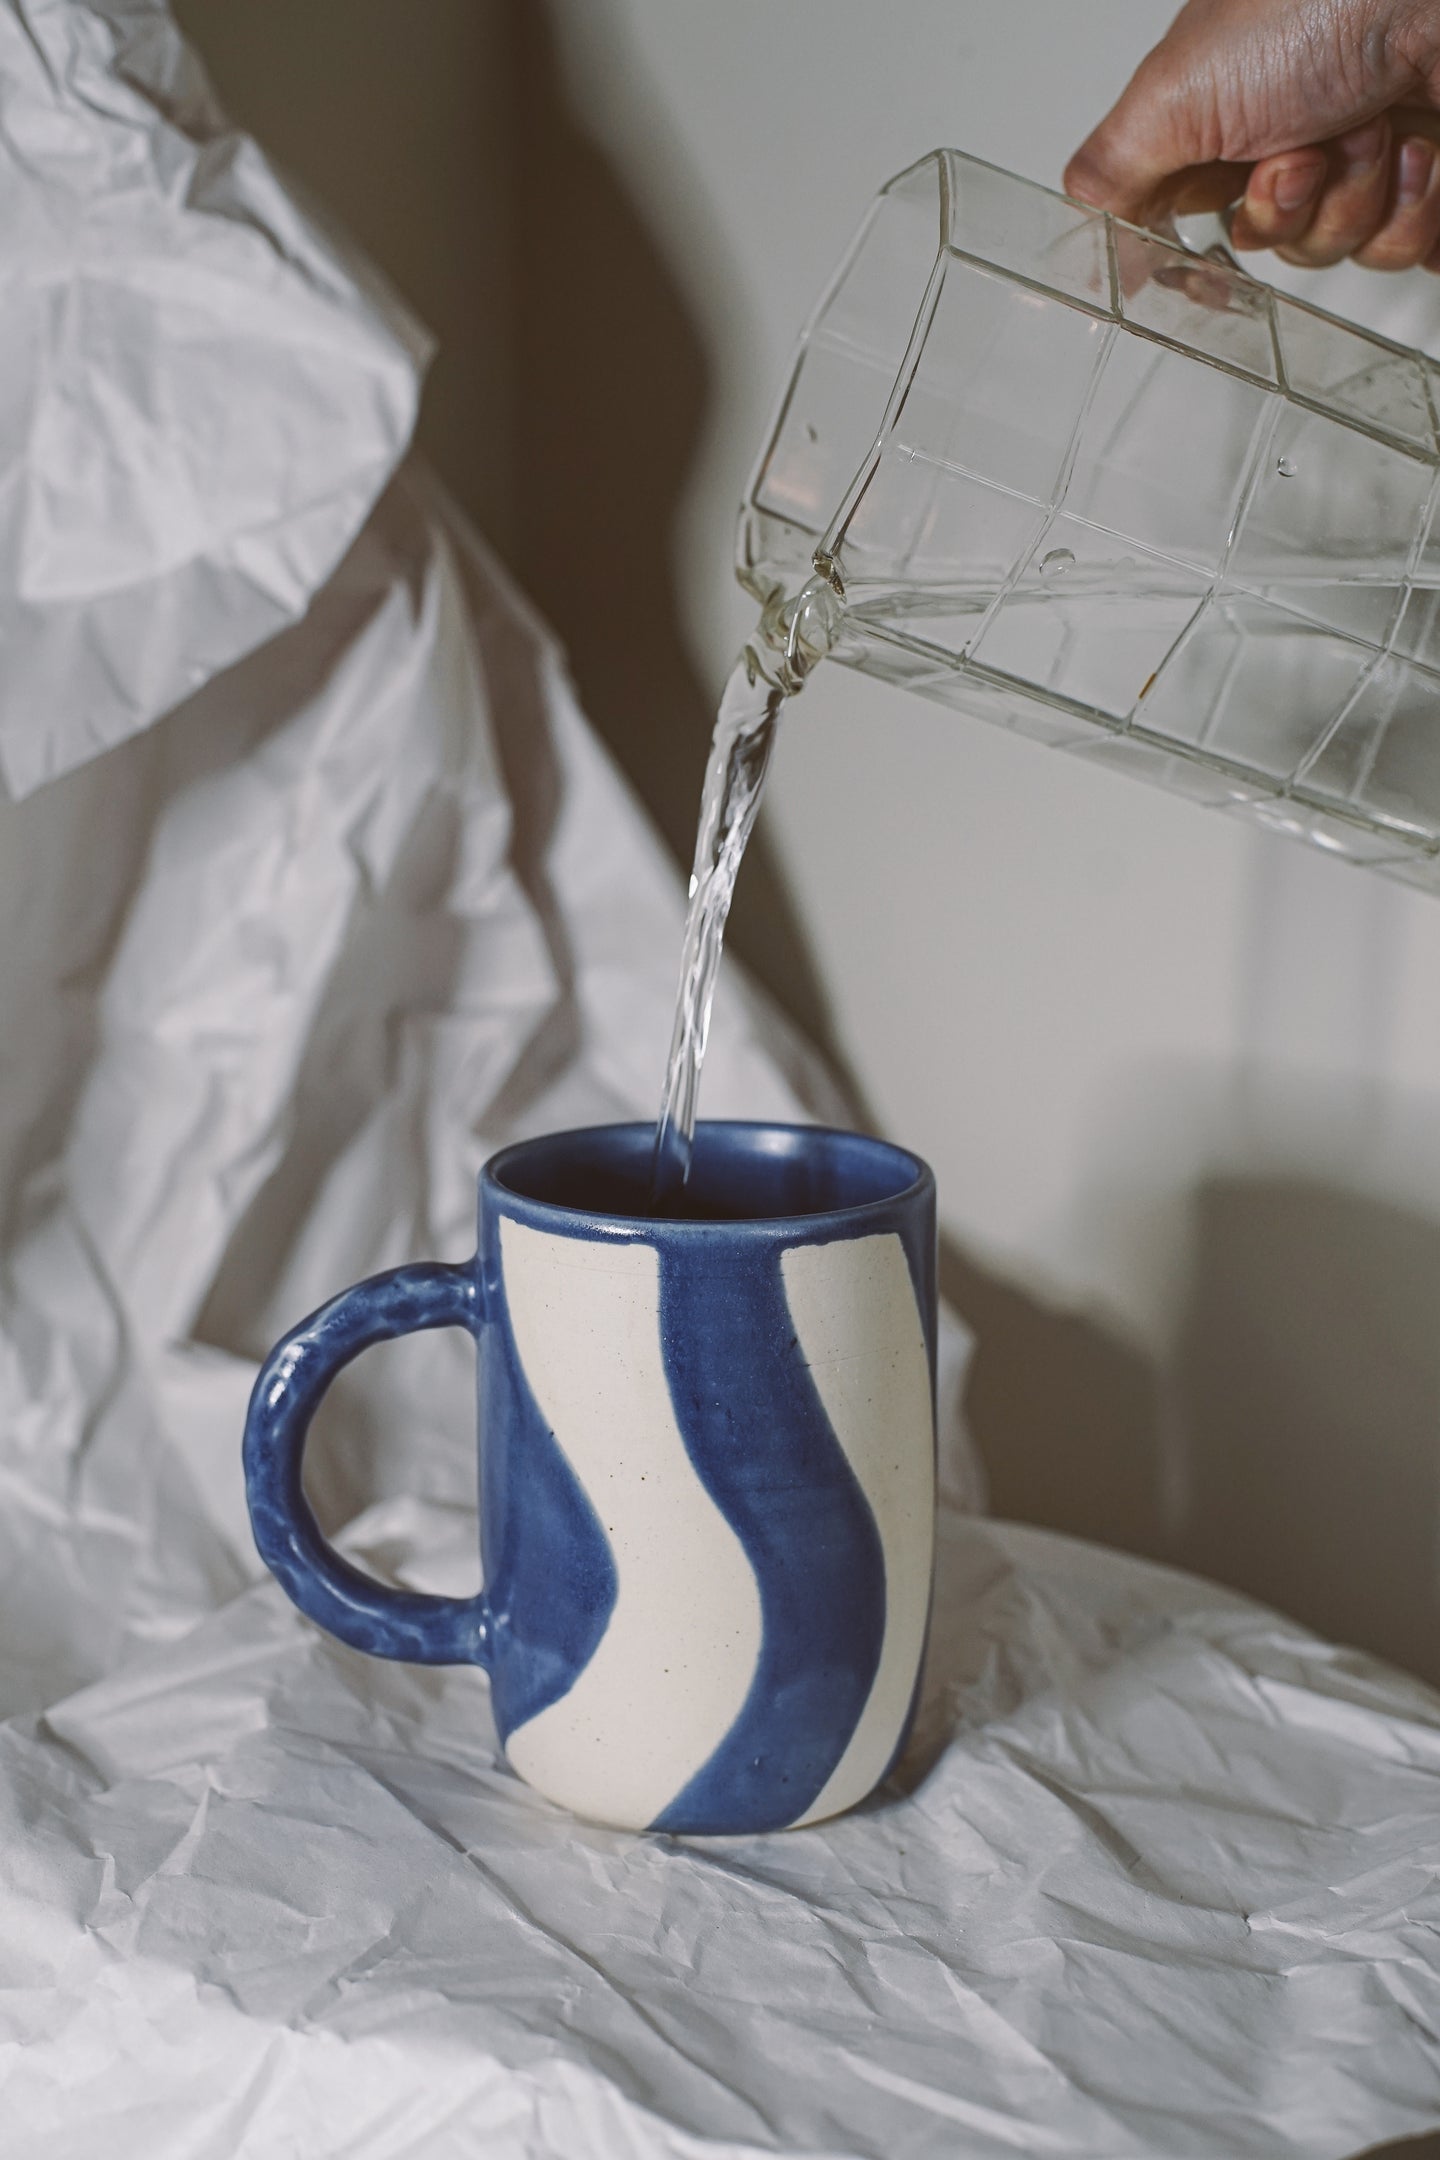 Blue Stripe Mug